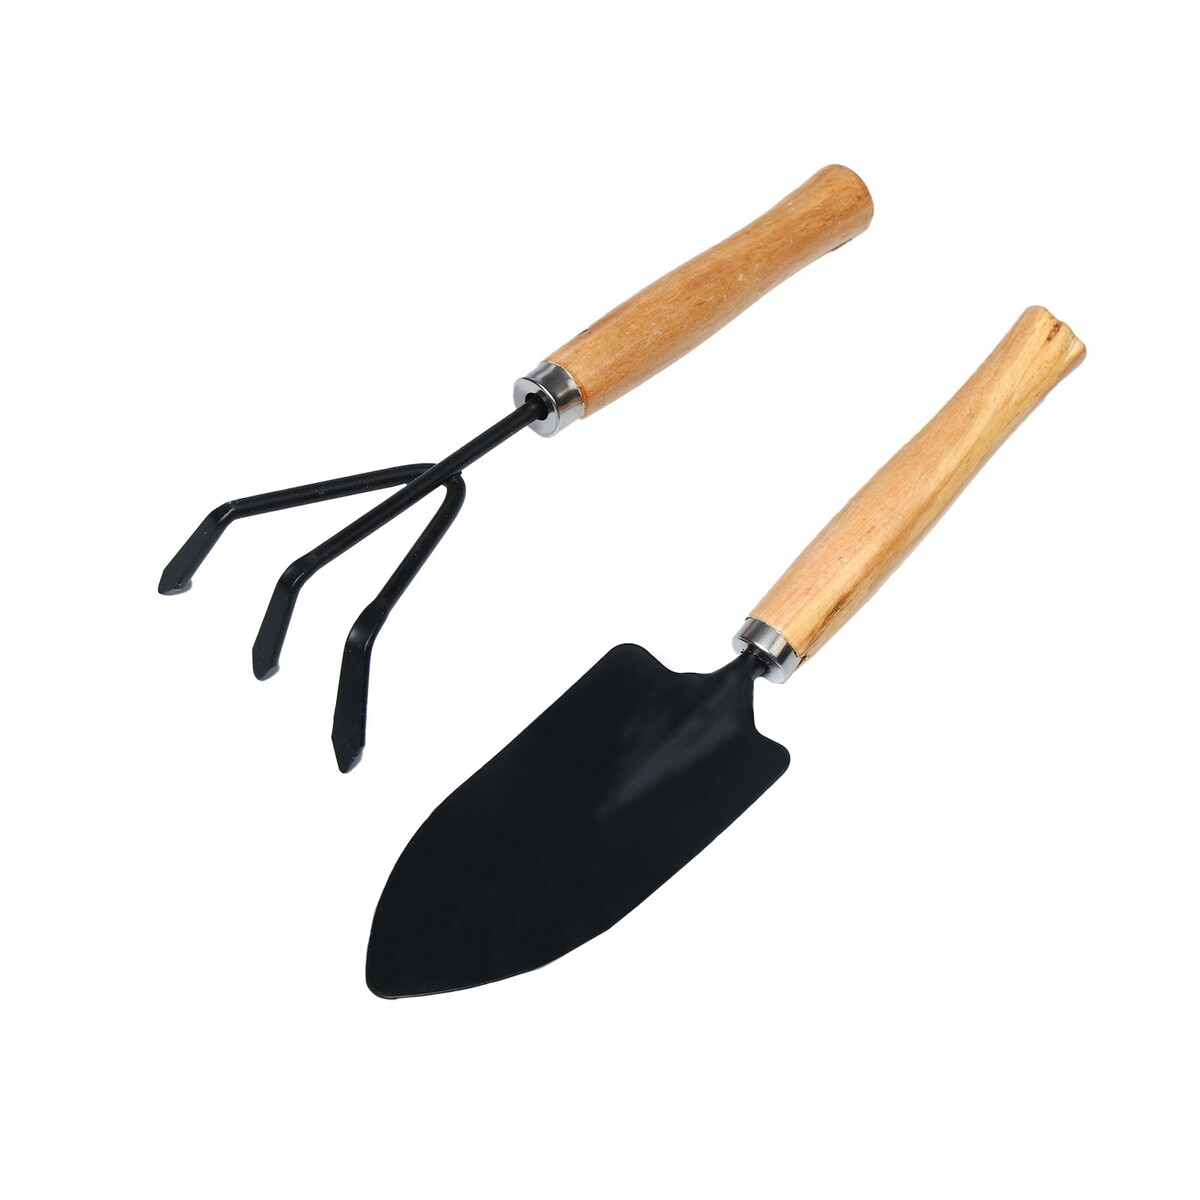 Набор садового инструмента, 2 предмета: рыхлитель, совок, длина 26 см, деревянные ручки набор совок и щётка с длинными ручками paul masquin